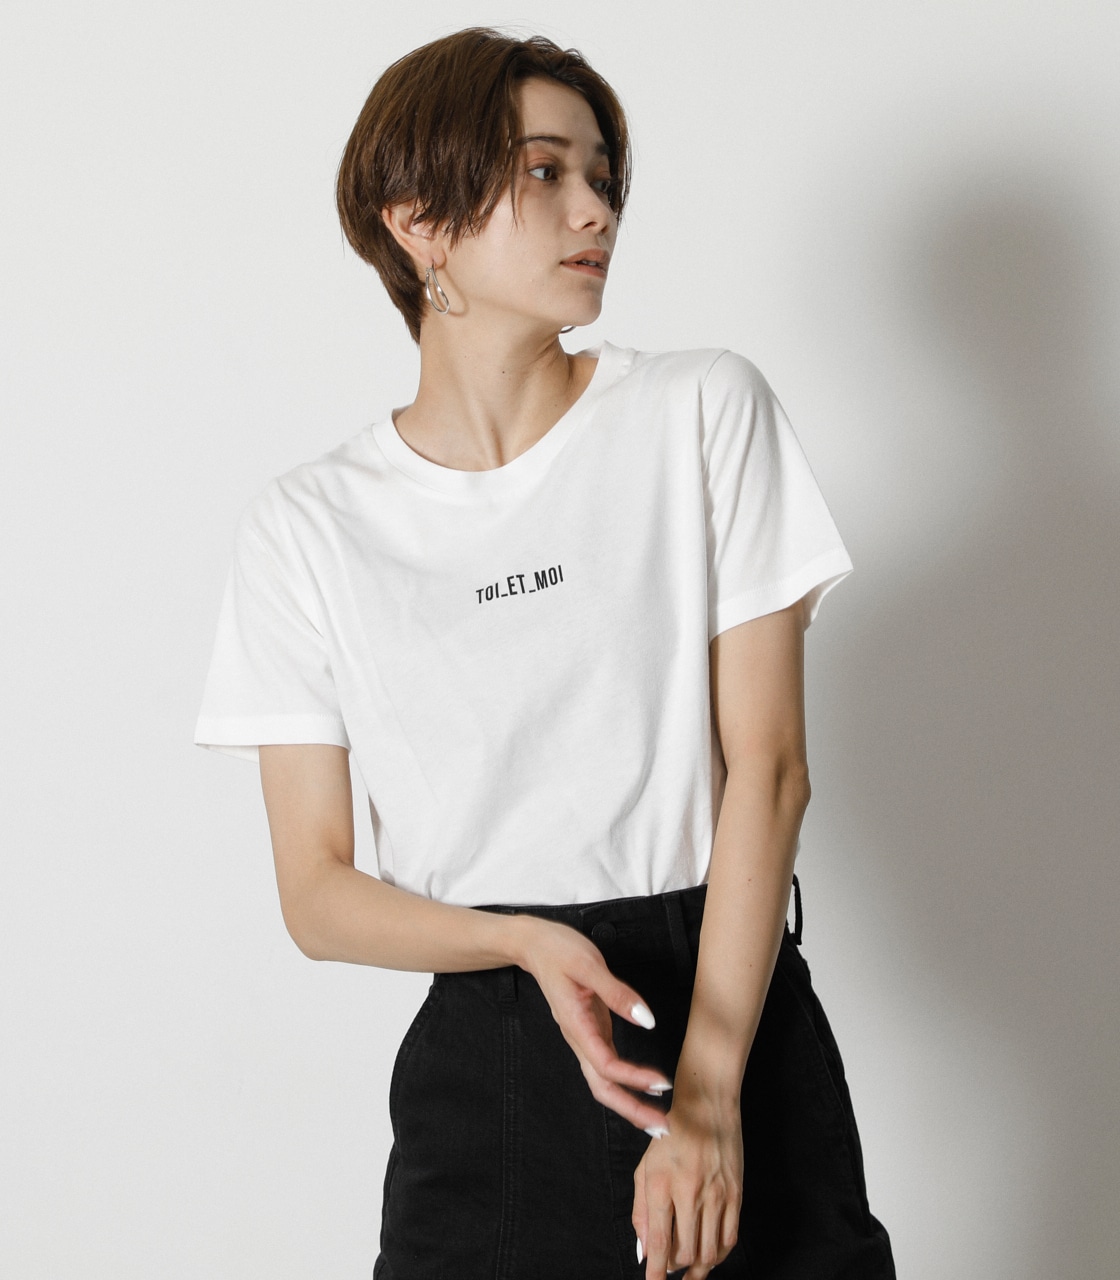 WOMEN FASHION Shirts & T-shirts Asymmetric Beige S discount 67% Sushan T-shirt 